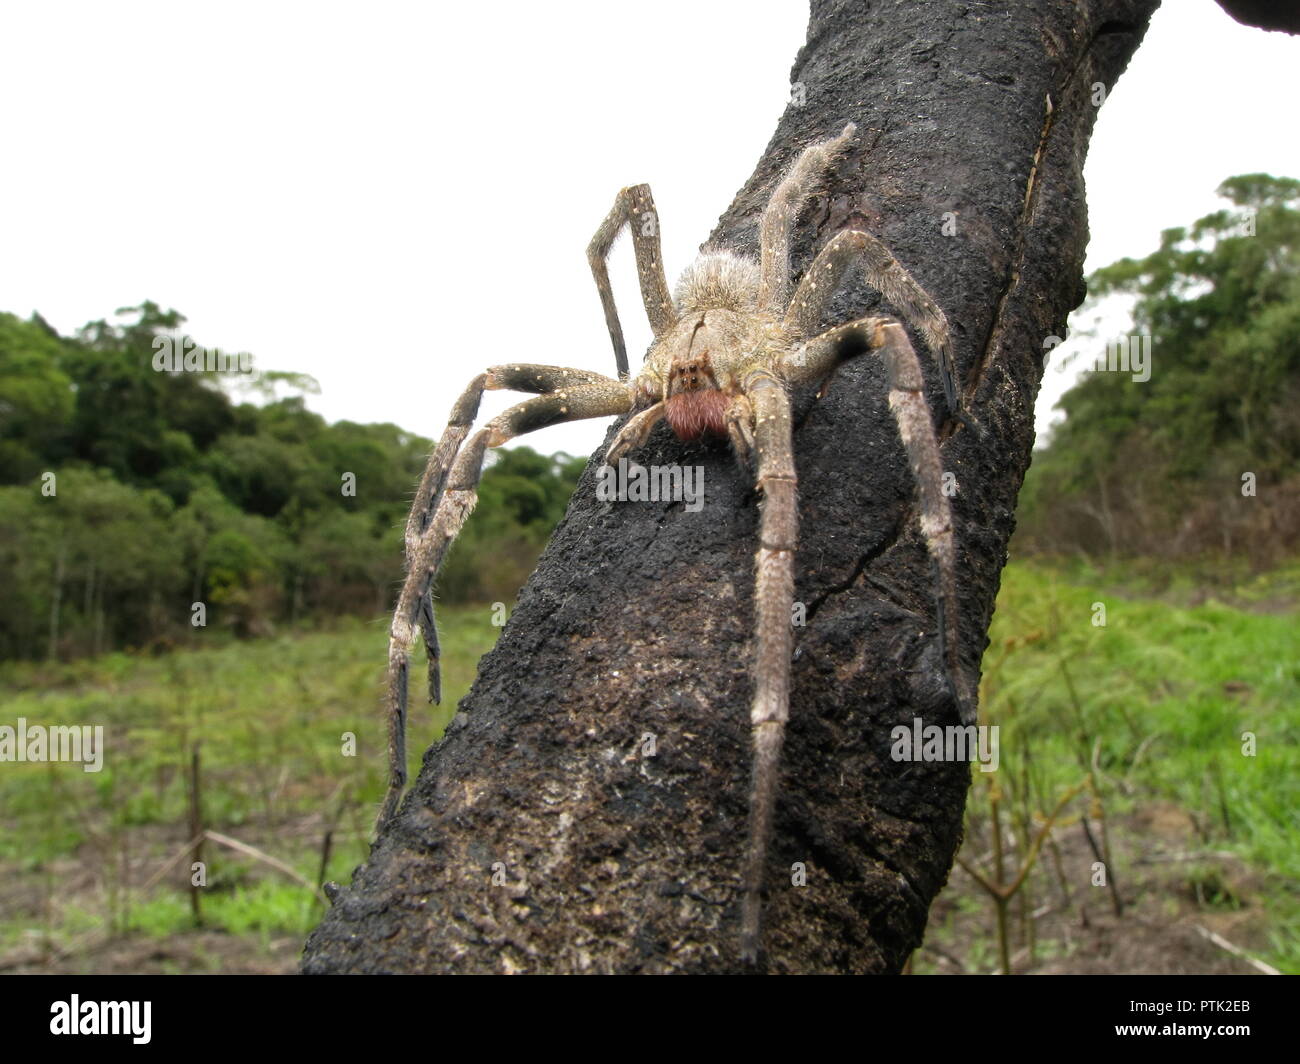 L'errance du Brésil (araignée Phoneutria) sur le bois brûlé, araignées venimeux d'Amérique du sud, également connu comme Armadeira, avec quelques morsures mortelles d'accidents. Banque D'Images